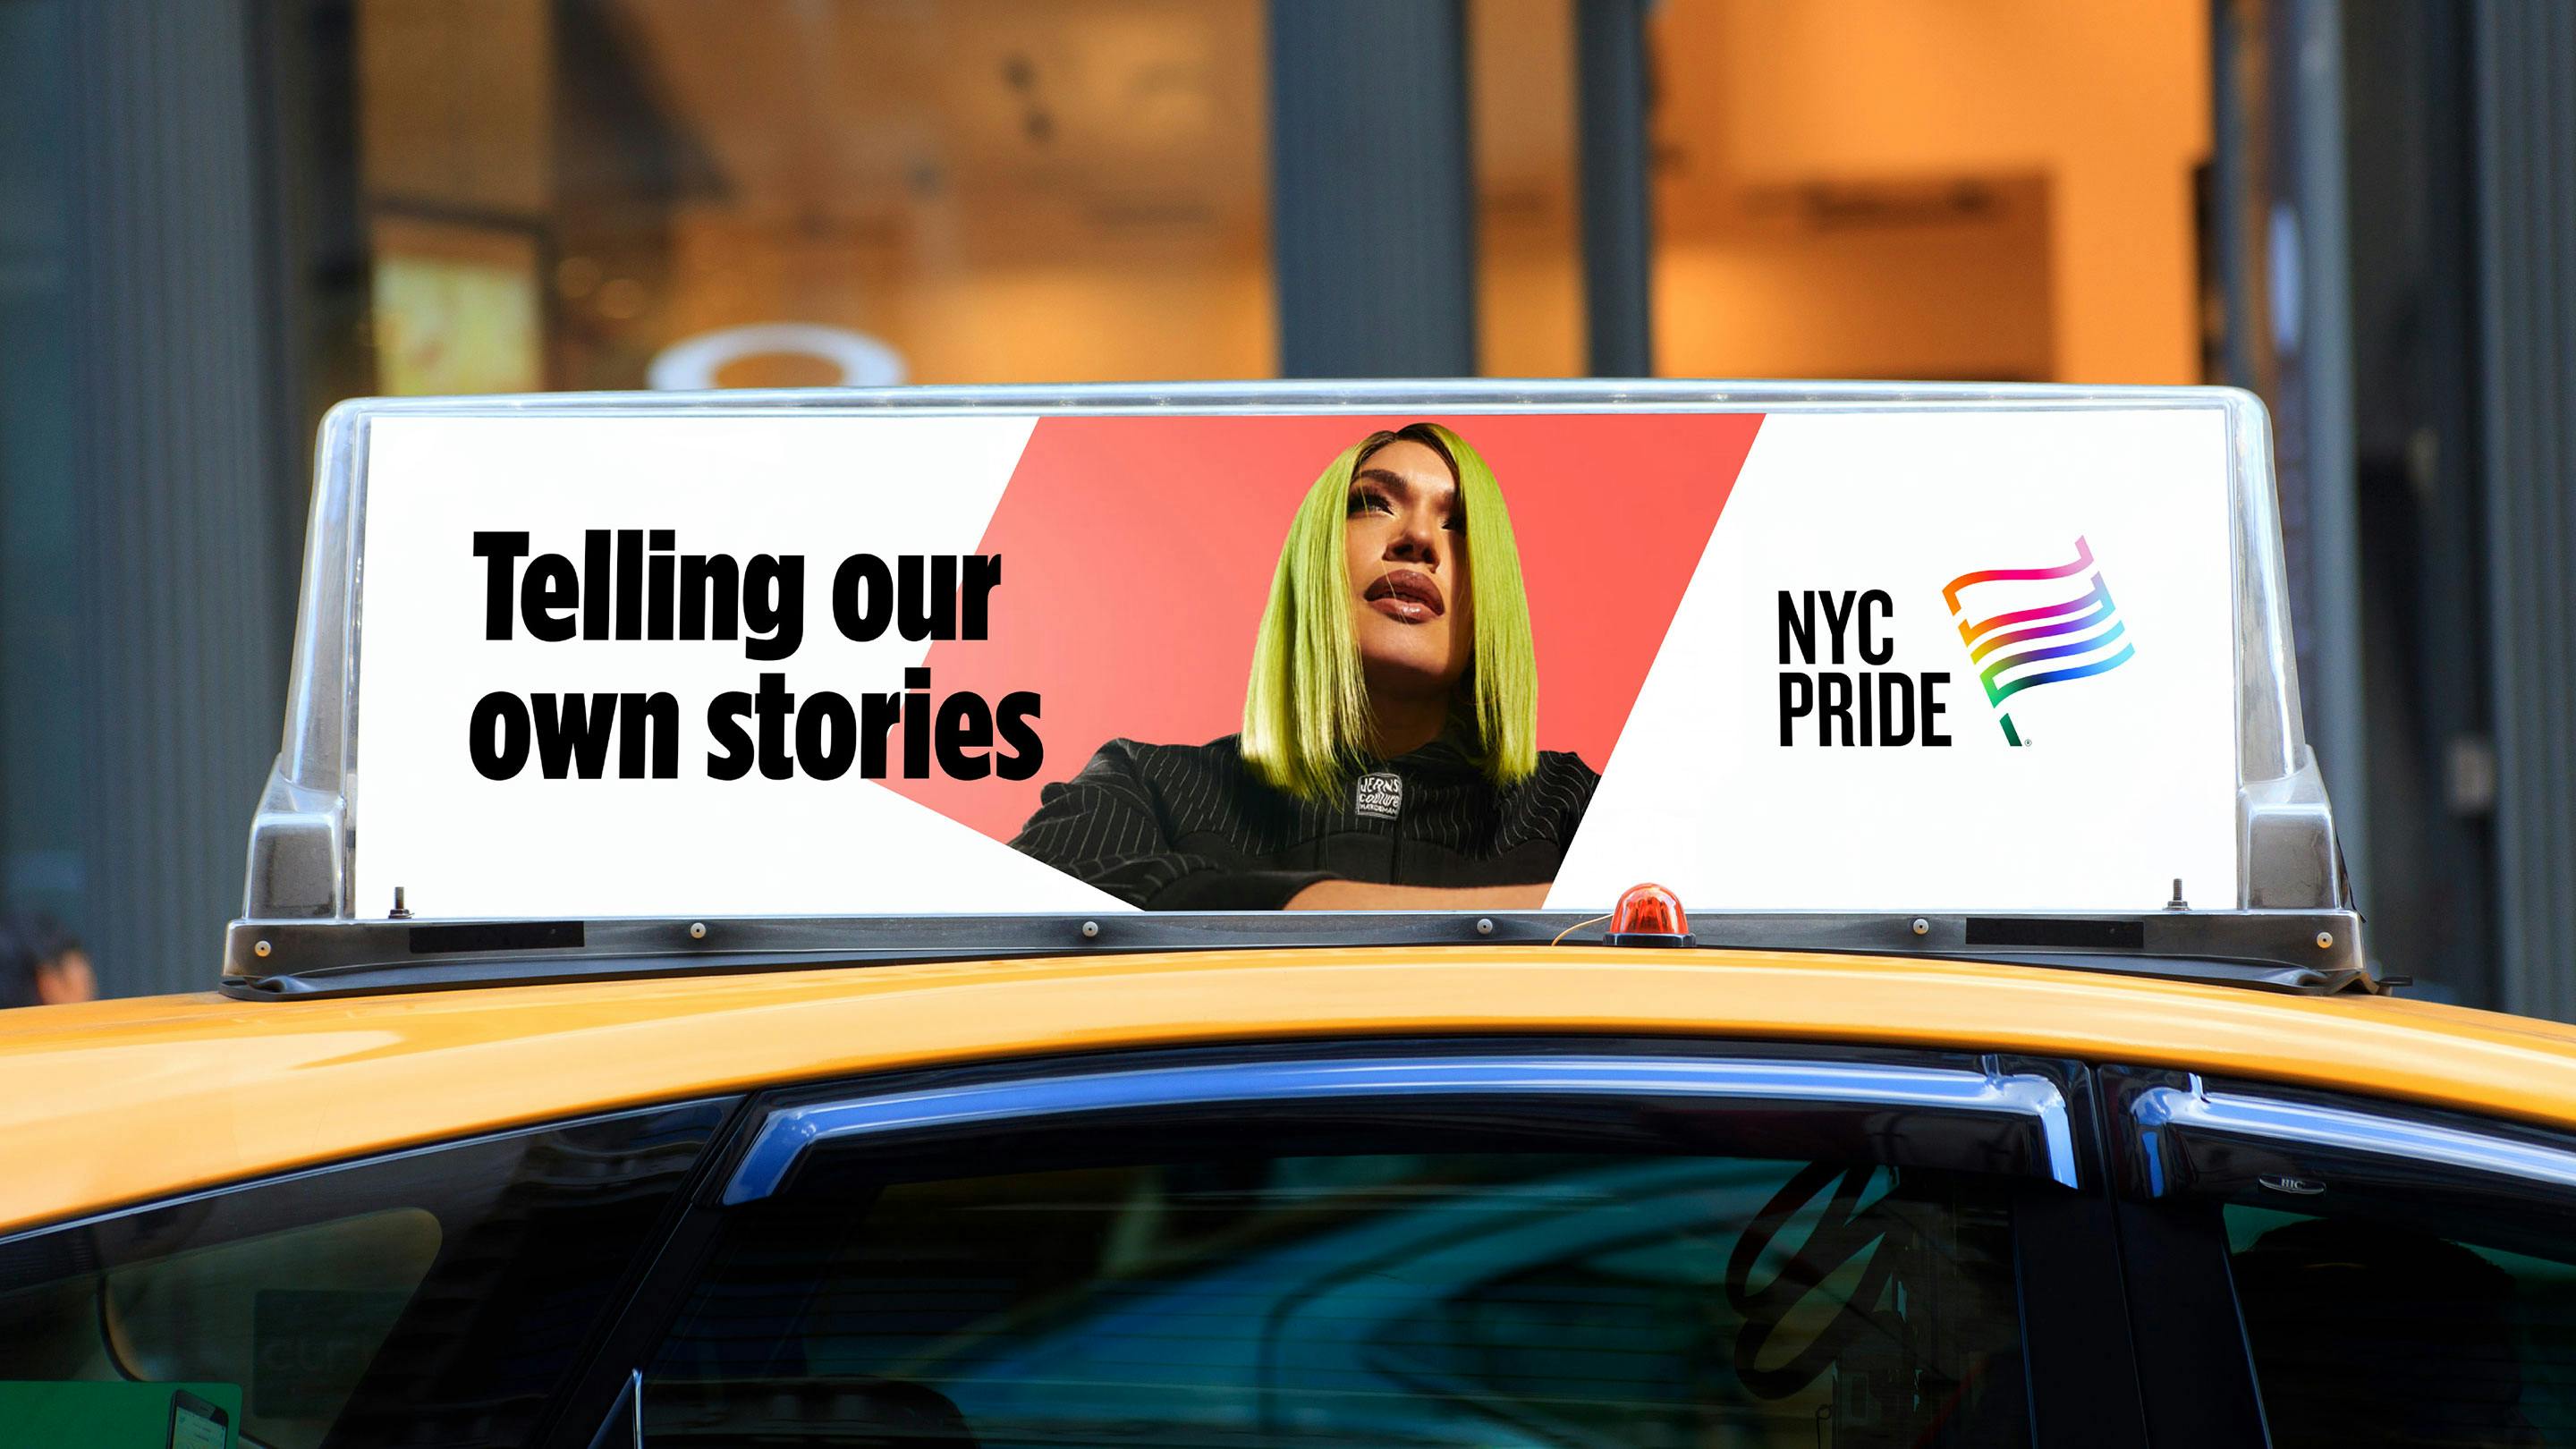 NYC Pride taxi